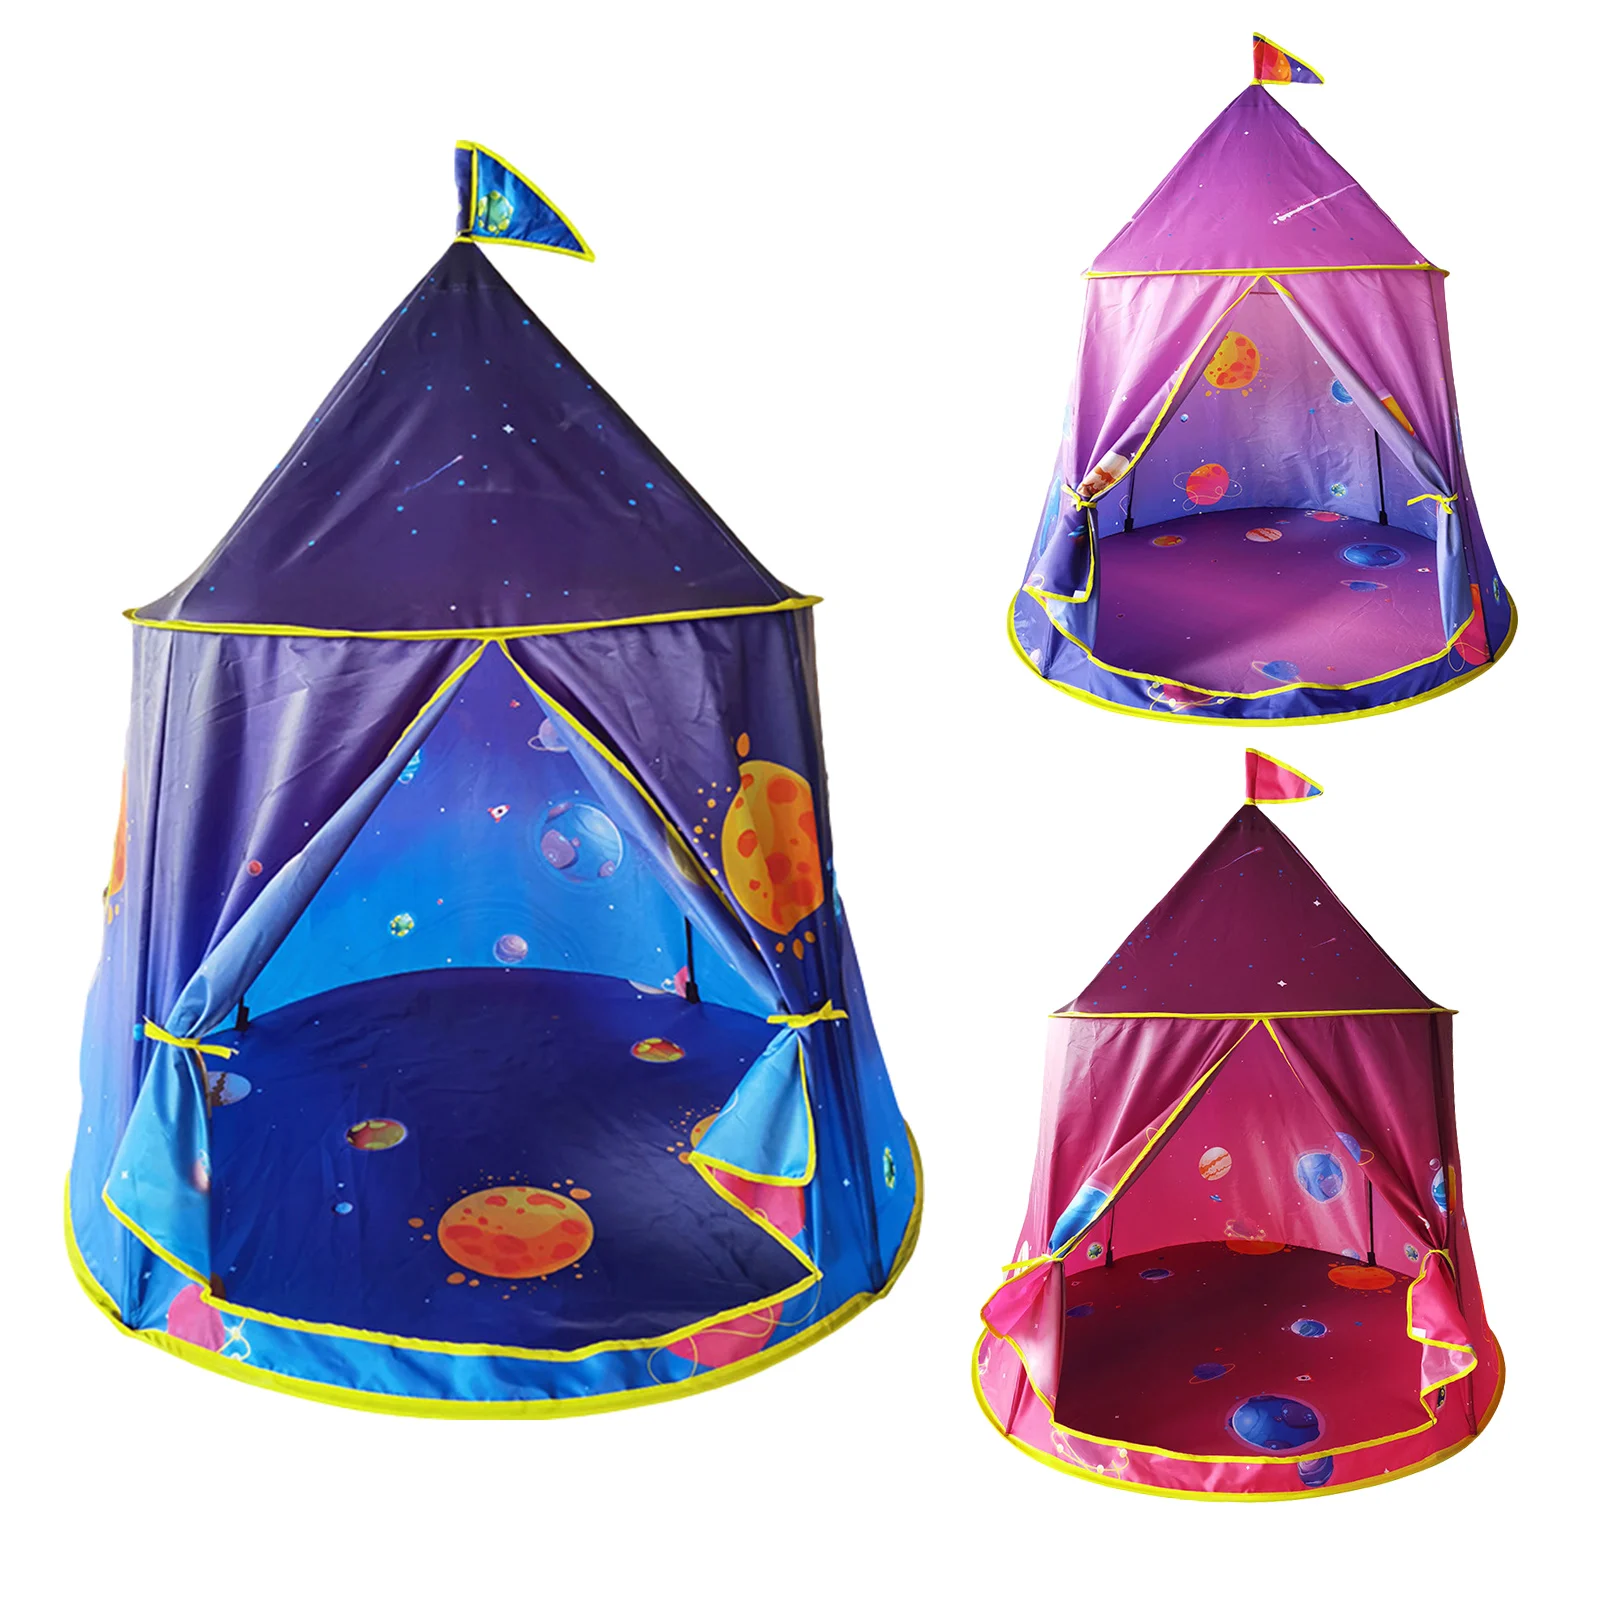 

Kids Play Tent Space World Fun Tent Playhouse Indoor Privacy Yurt Tent For Kids Children Indoor Outdoor